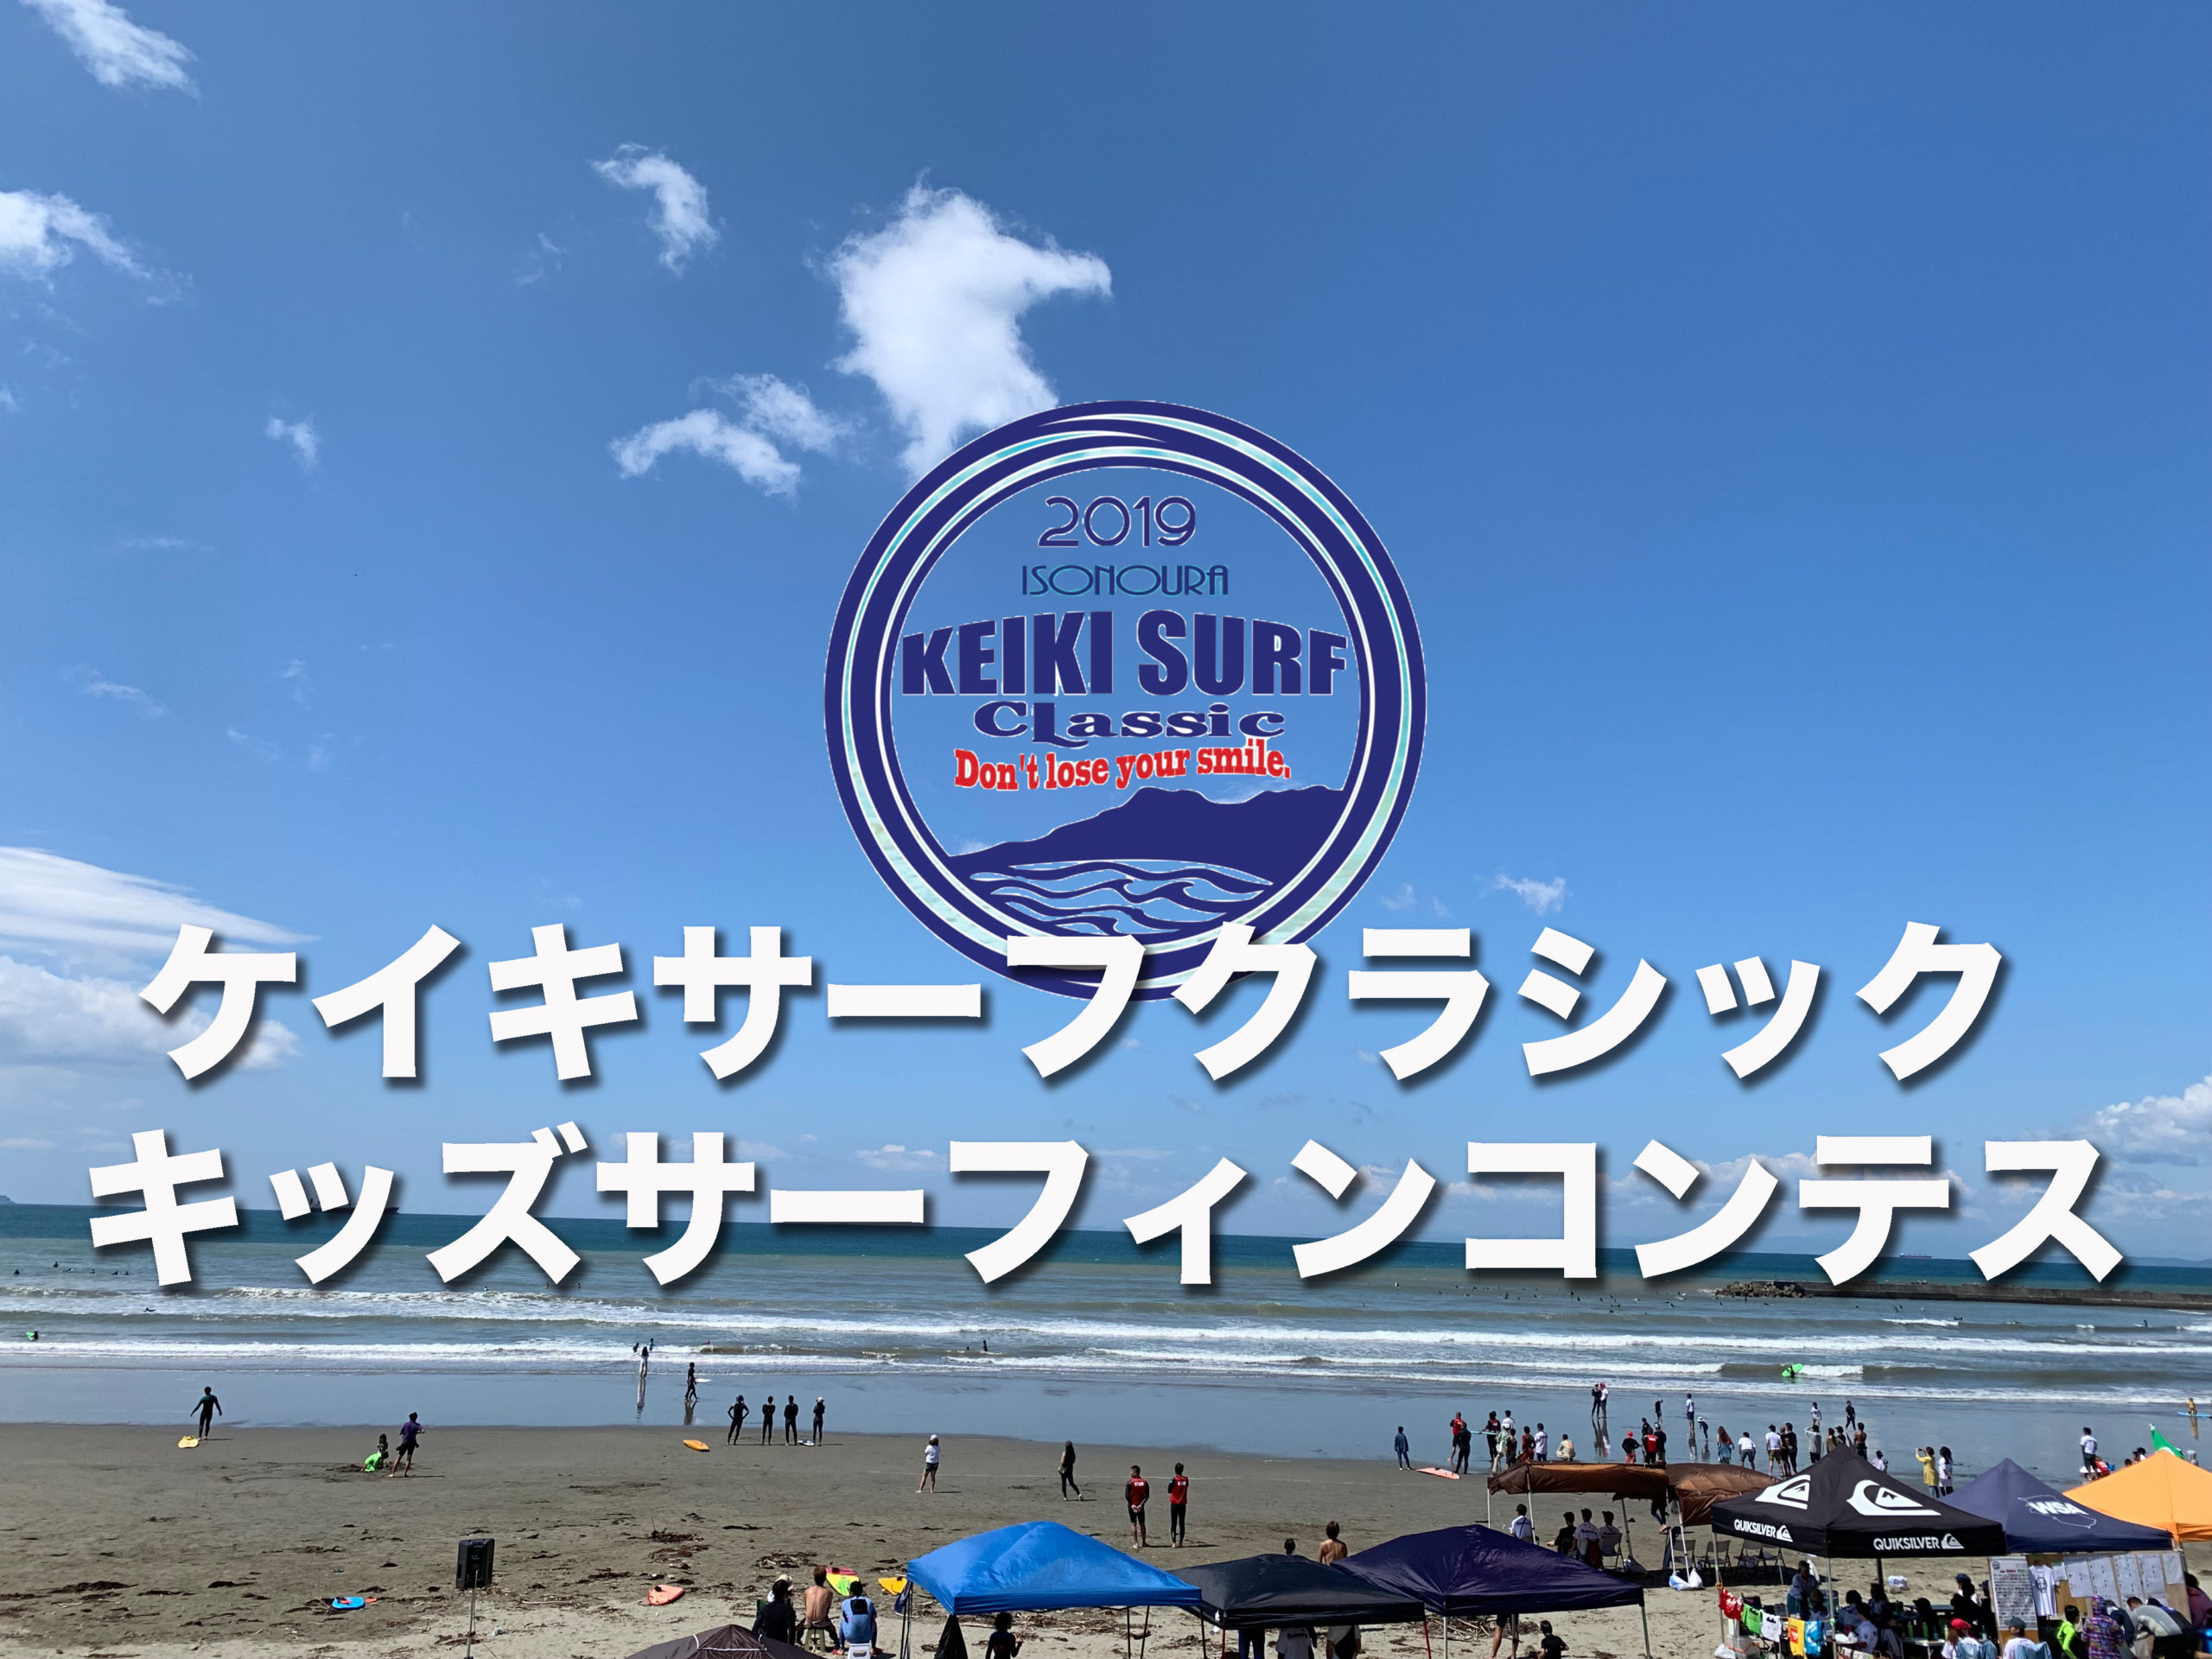 「レポート」磯ノ浦　KEIKI SURF CLASSIC キッズサーフィンコンテスト に行ってまいりました！